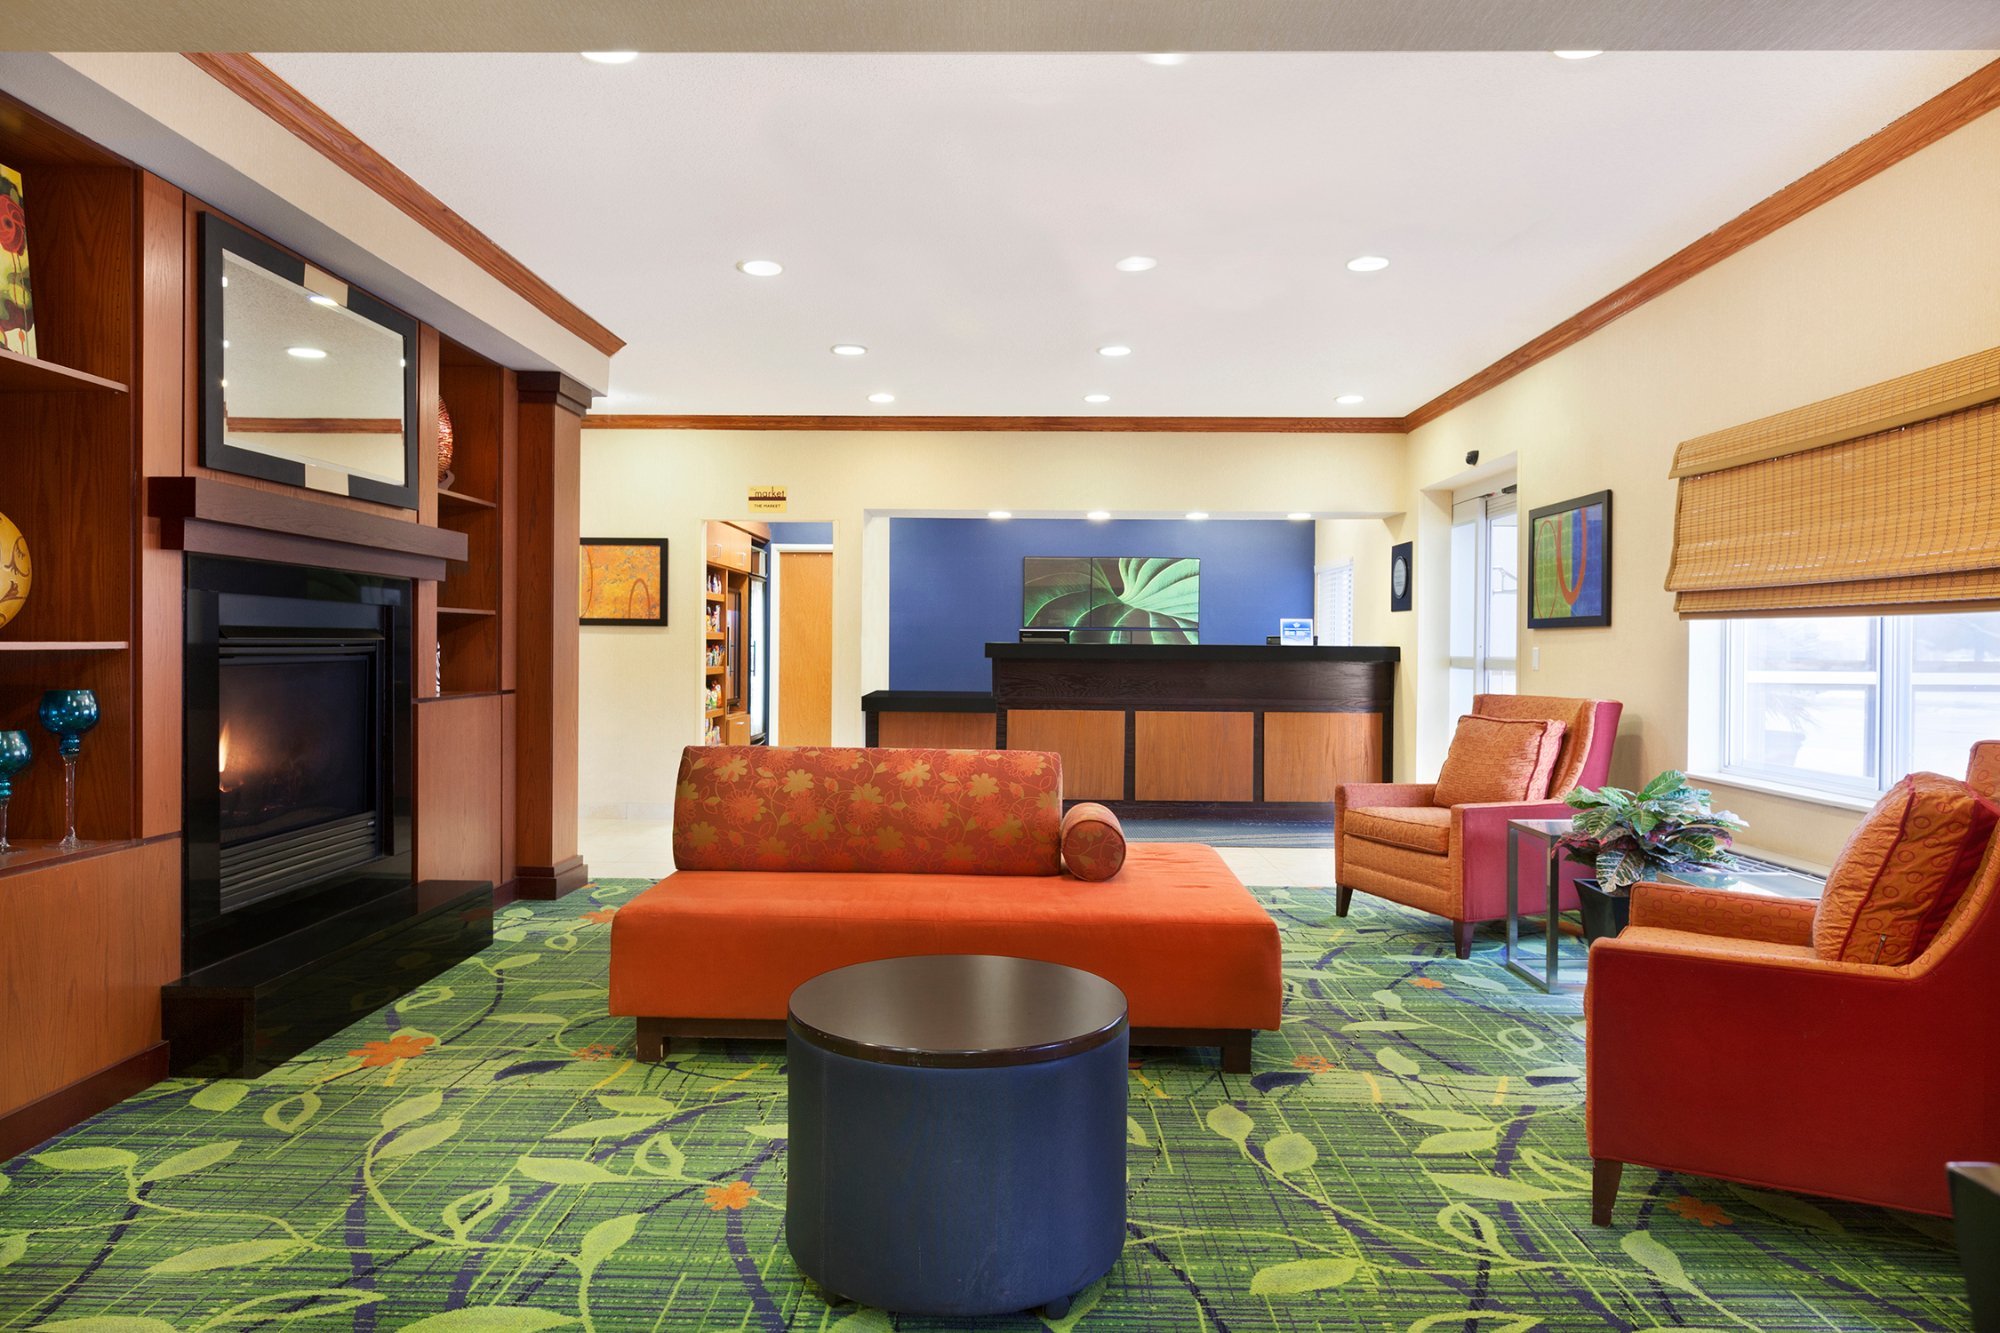 Photo of Fairfield Inn & Suites by Marriott Minneapolis Burnsville, Burnsville, MN